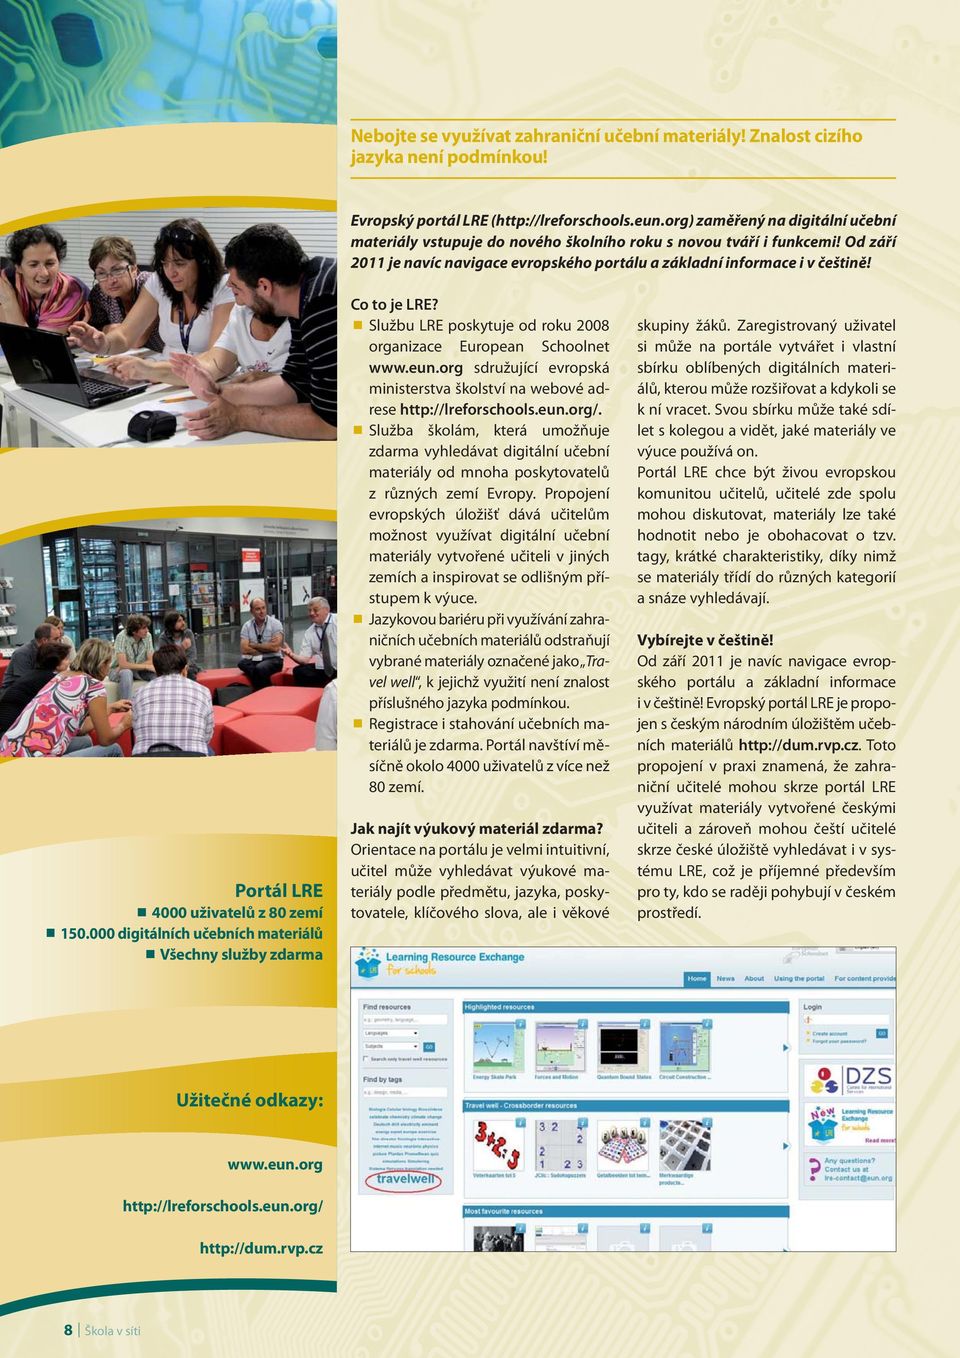 Službu LRE poskytuje od roku 2008 organizace European Schoolnet www.eun.org sdružující evropská ministerstva školství na webové adrese http://lreforschools.eun.org/.